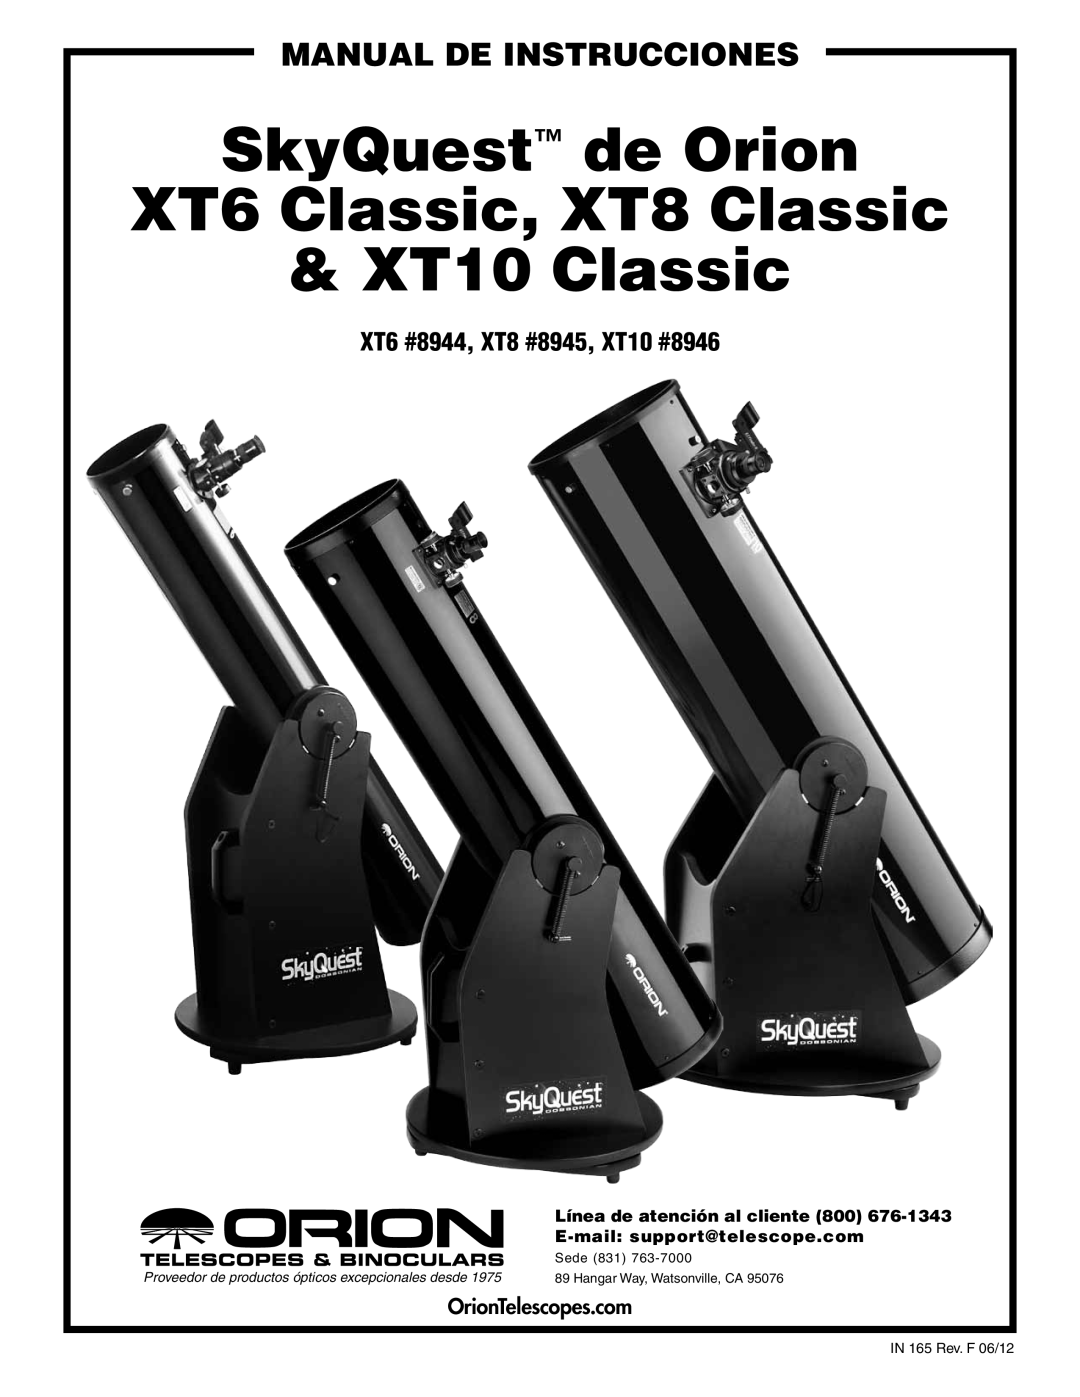 Orion manual XT6 #8944, XT8 #8945, XT10 #8946, OrionTelescopes.com, Línea de atención al cliente 800, Sede 831 